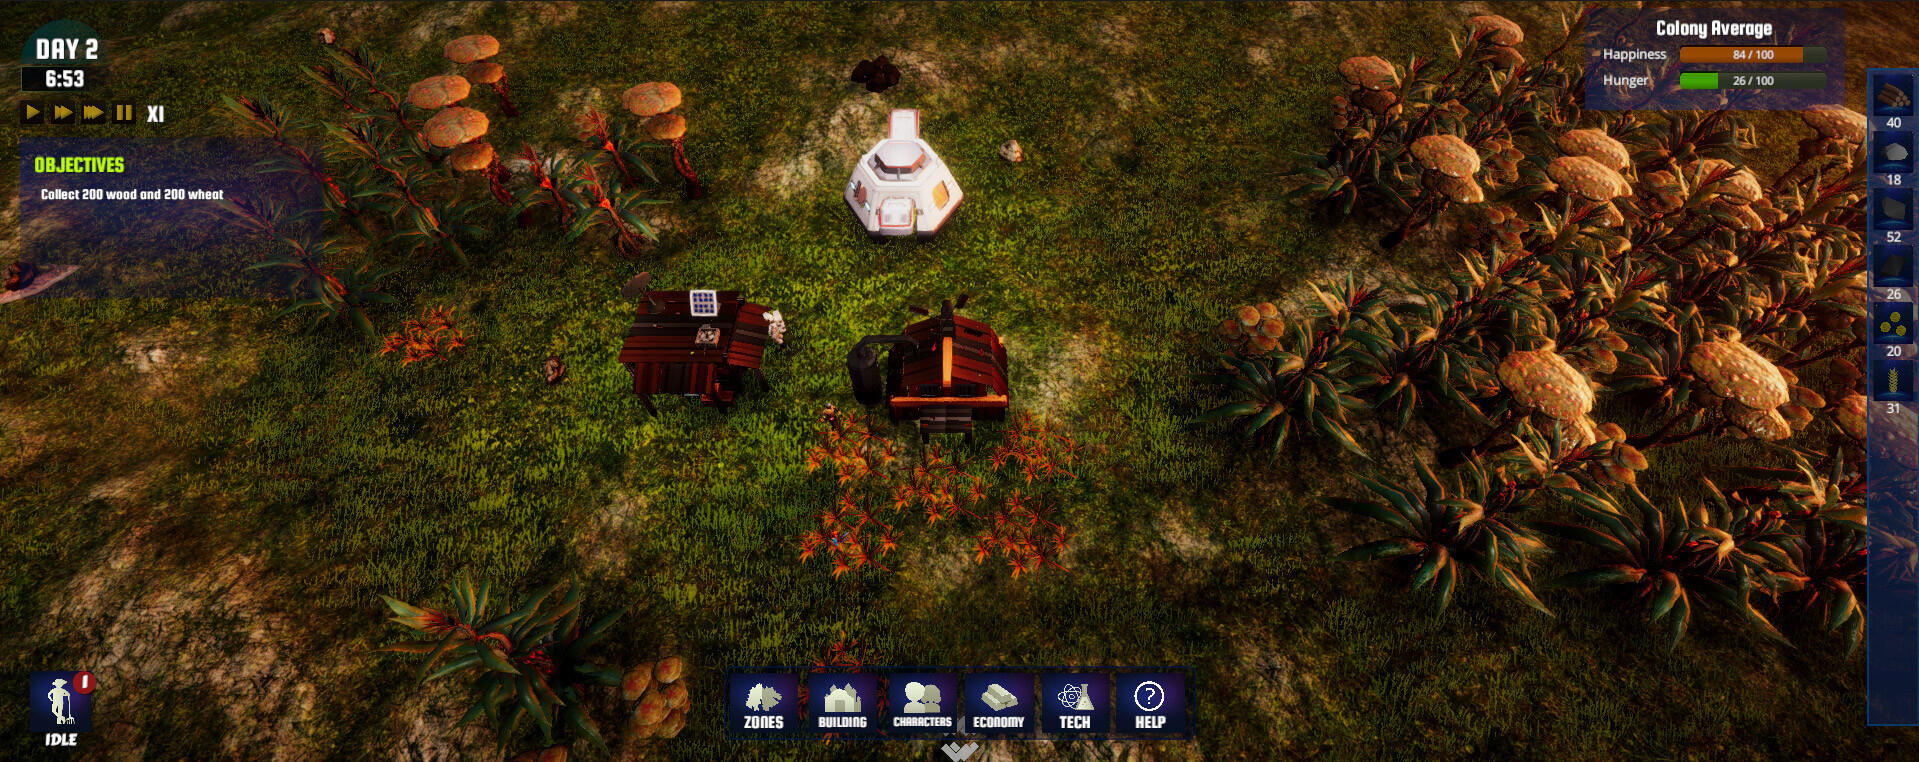 Screenshot 1 of Simulador de colonización 